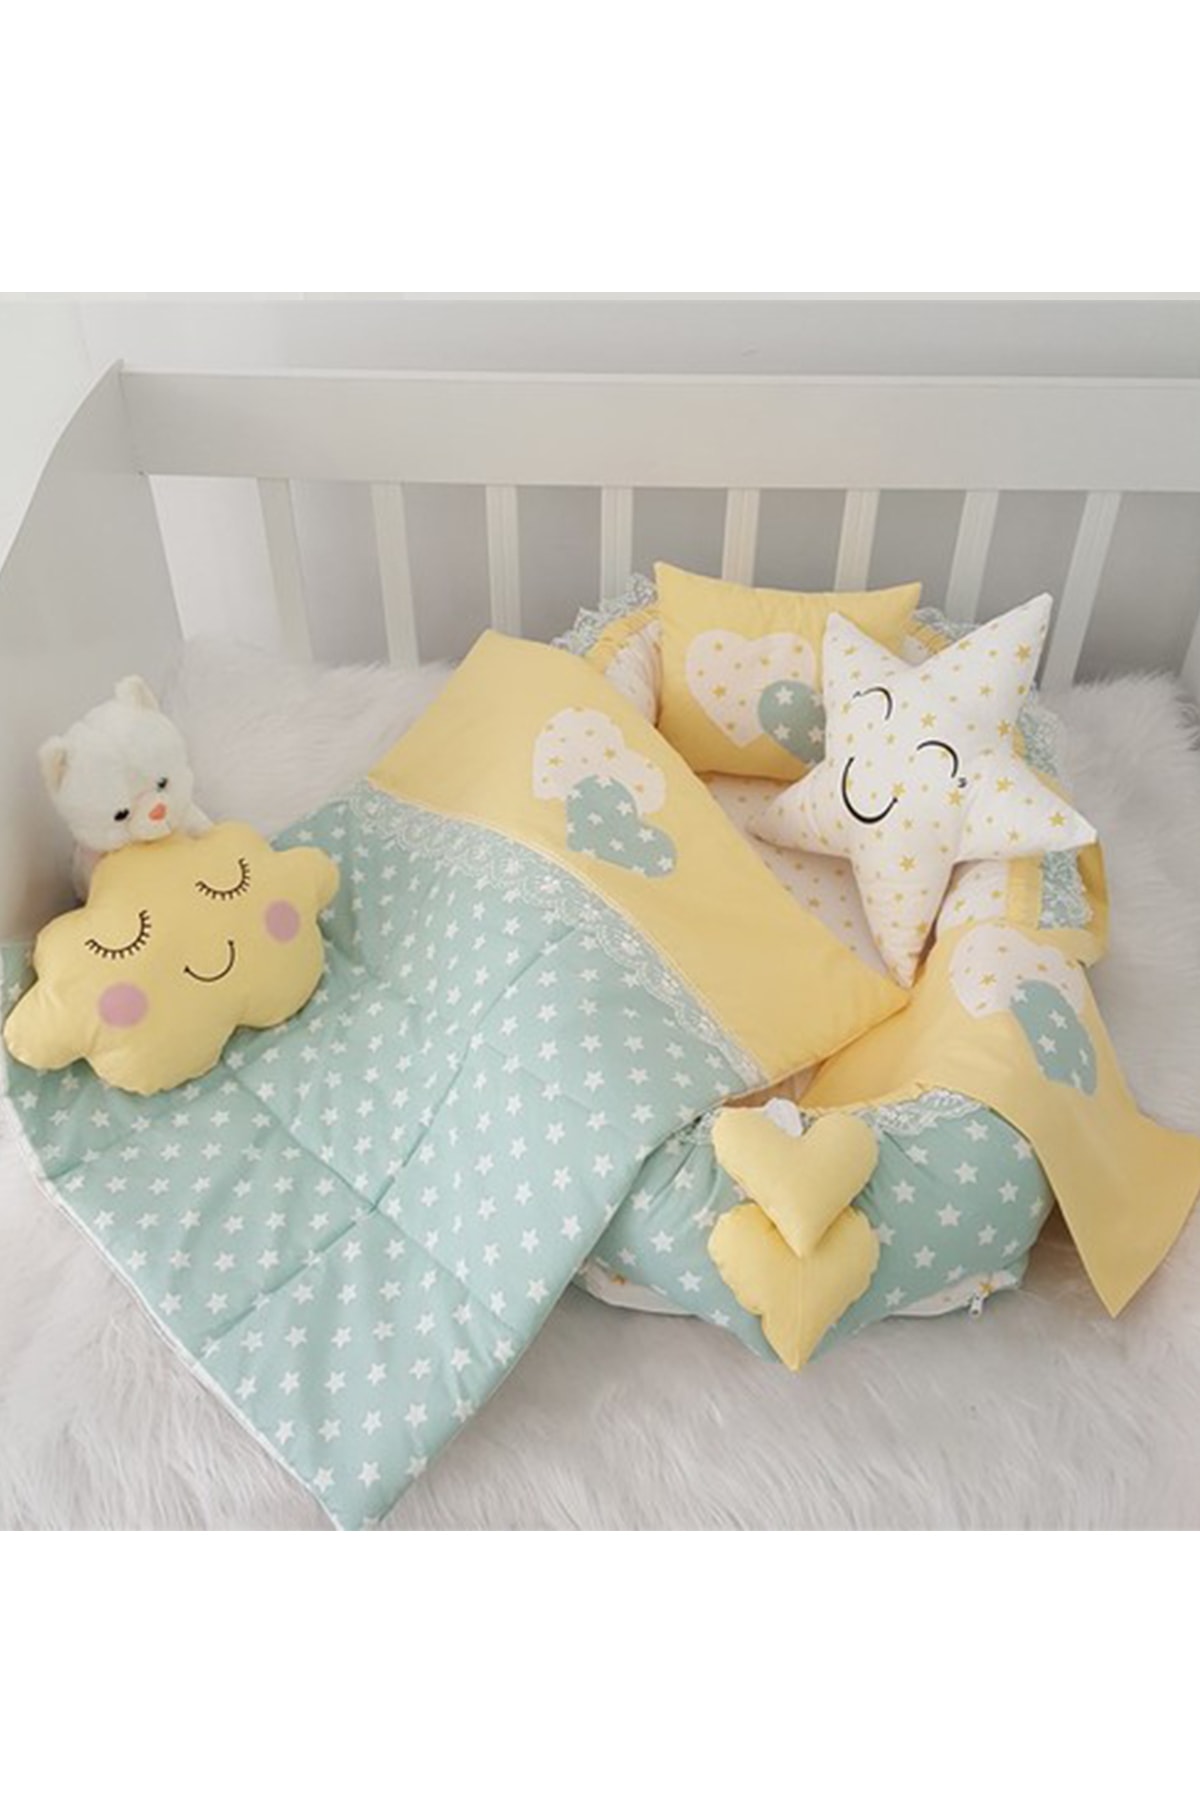 Jaju Baby Nest Yeşil Yıldız Sarı Kombin 6 Parça Lüx Jaju-babynest Anne Yanı Bebek Yatağı Set